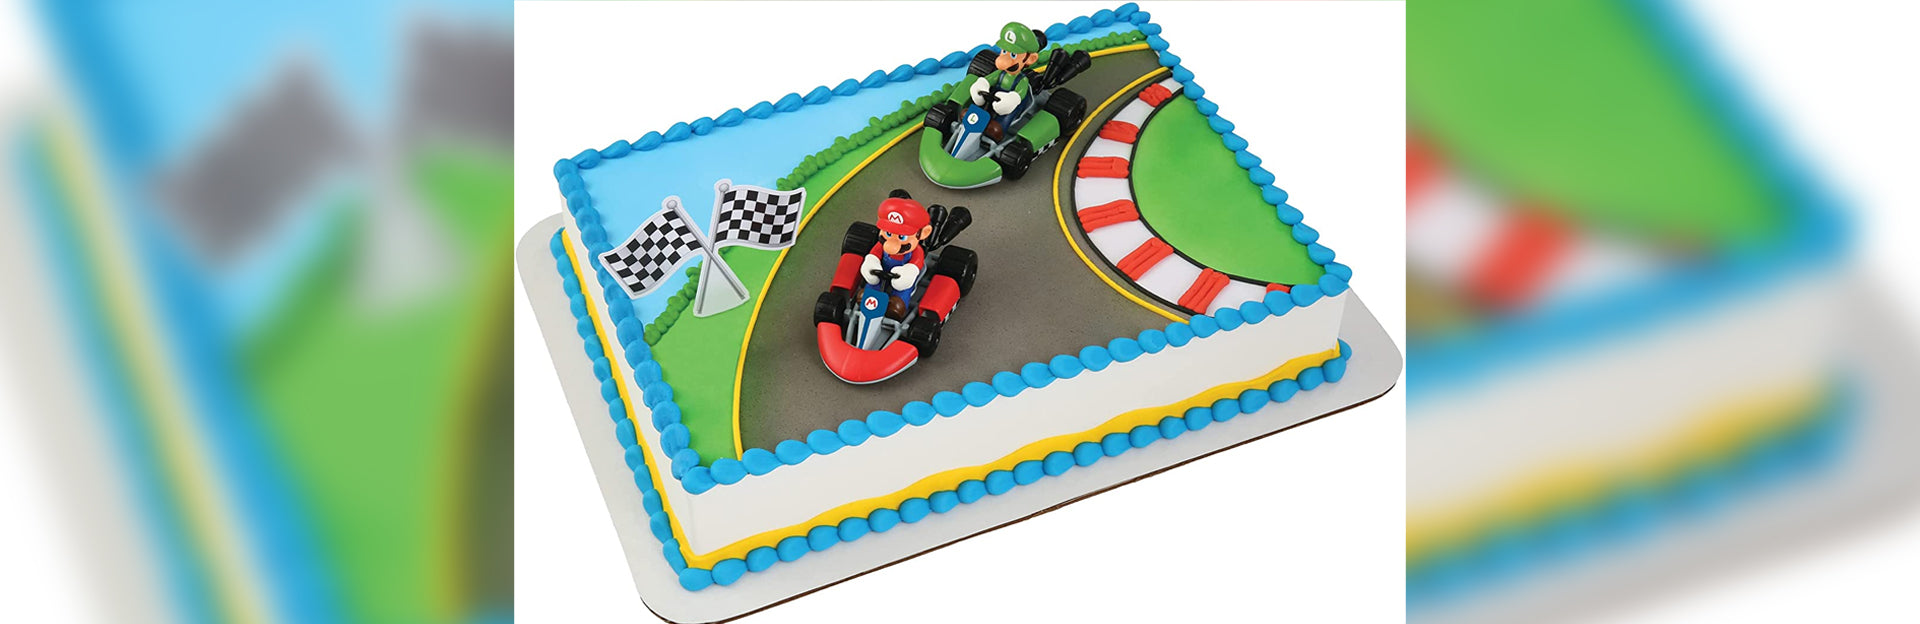 Super Mario Cake Cupcake Toppers Mario Bros Anime Party Cake